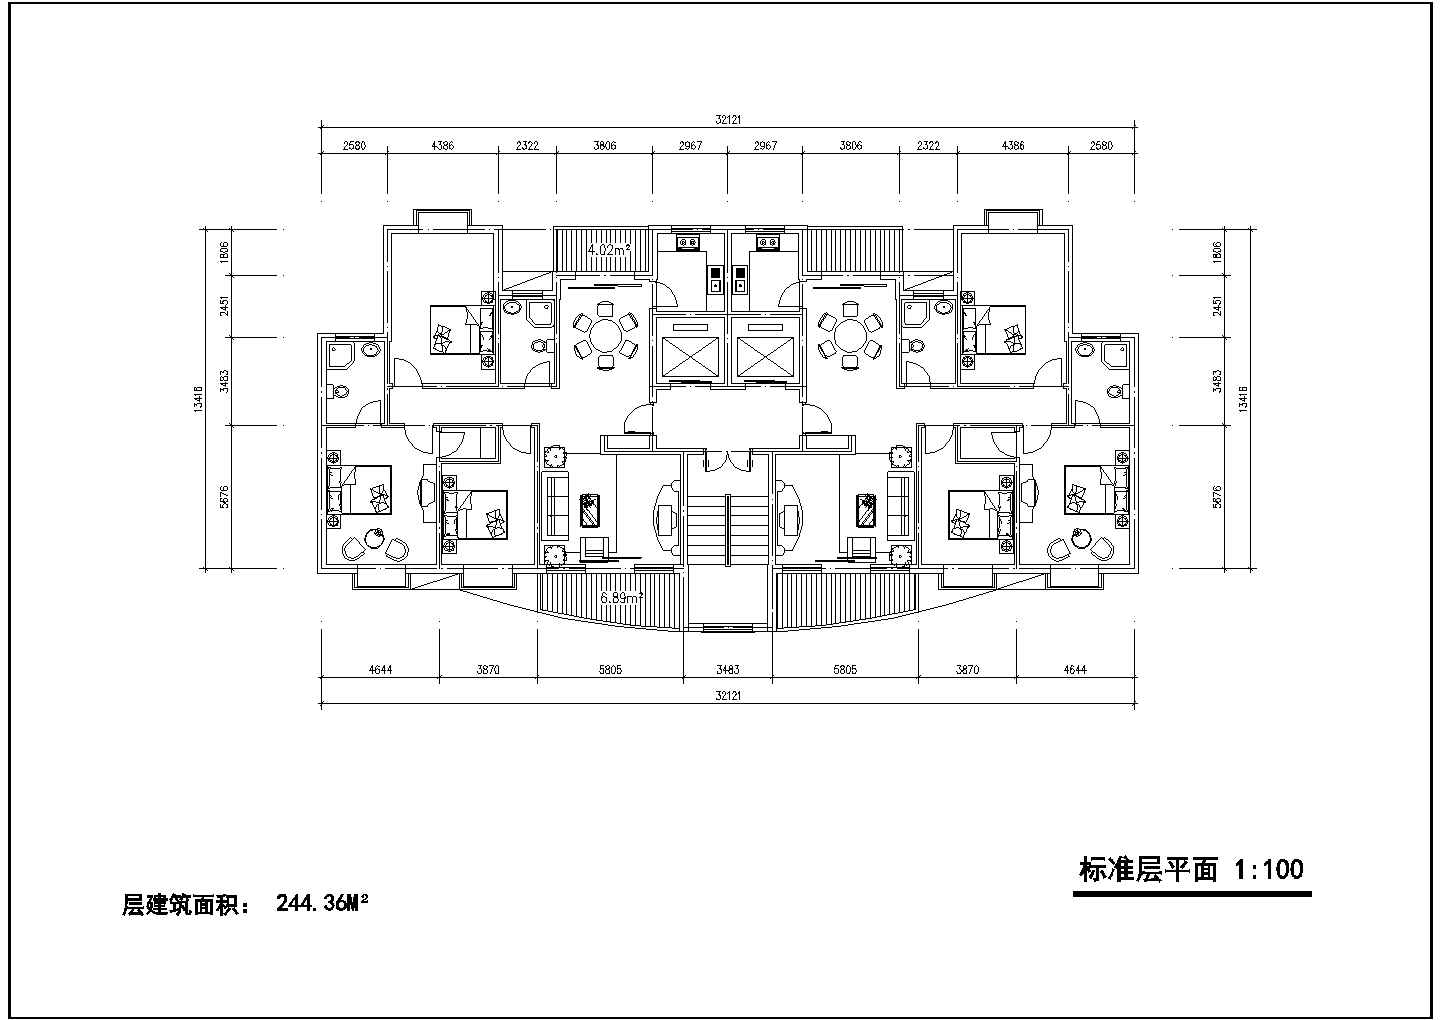 小区高层住宅标准层对称户型设计图【1楼梯2电梯、3室2厅2卫2阳台、每户100平米】